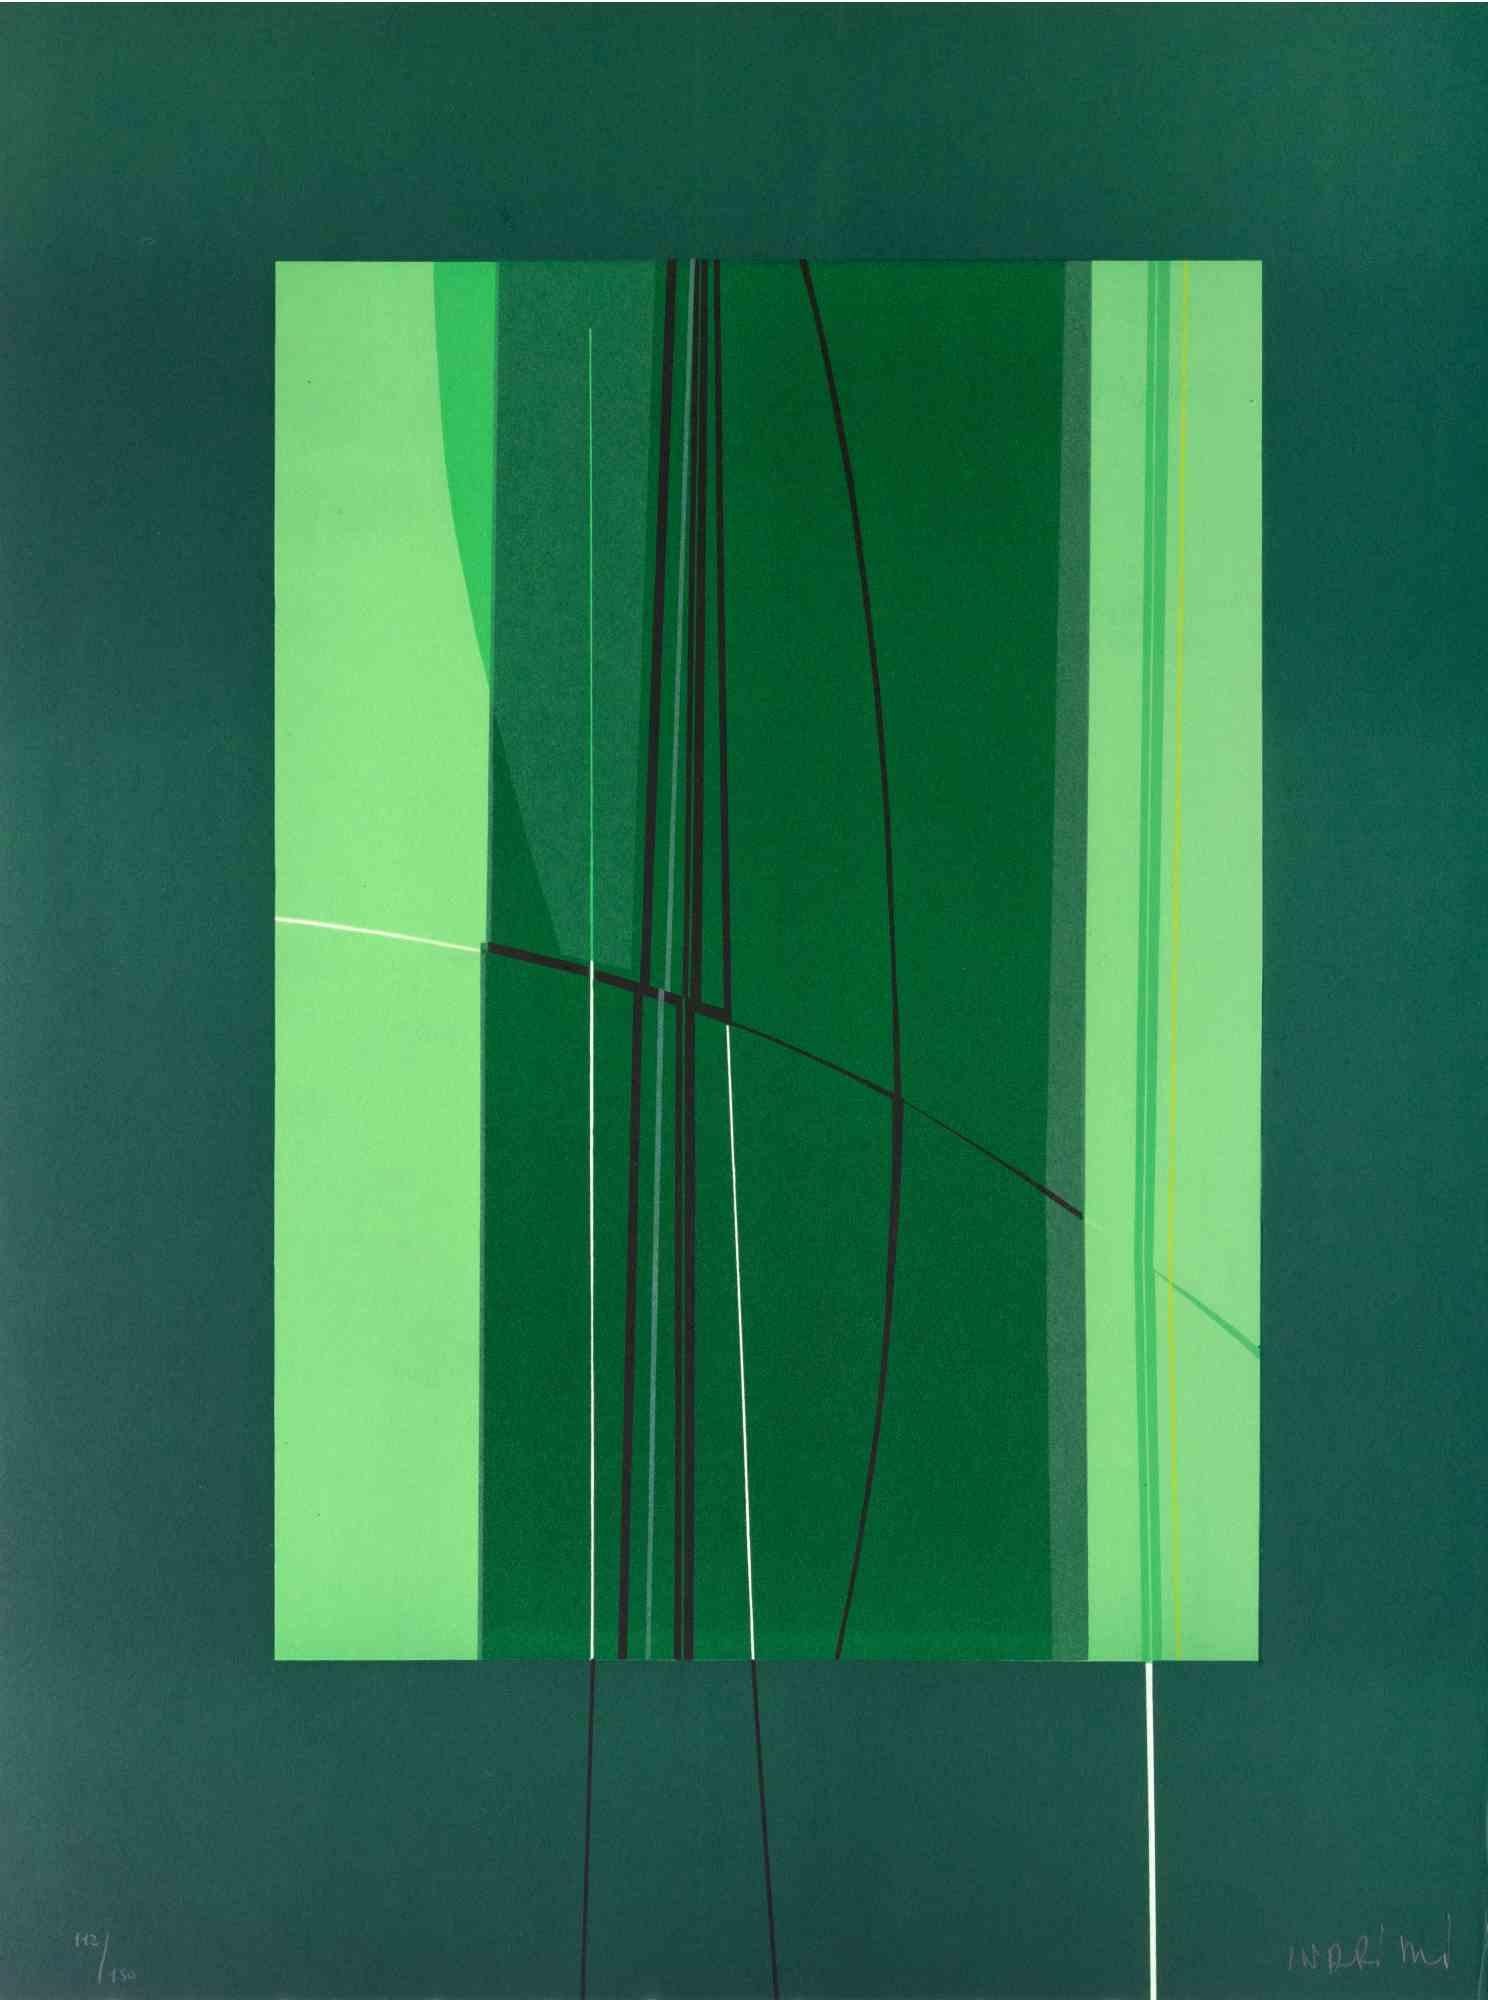 Green est une œuvre d'art contemporain réalisée par Lorenzo Indrimi dans les années 1970.

Lithographie en couleurs mélangées.

Signé à la main et daté dans la marge inférieure.

Édition de 112/150.